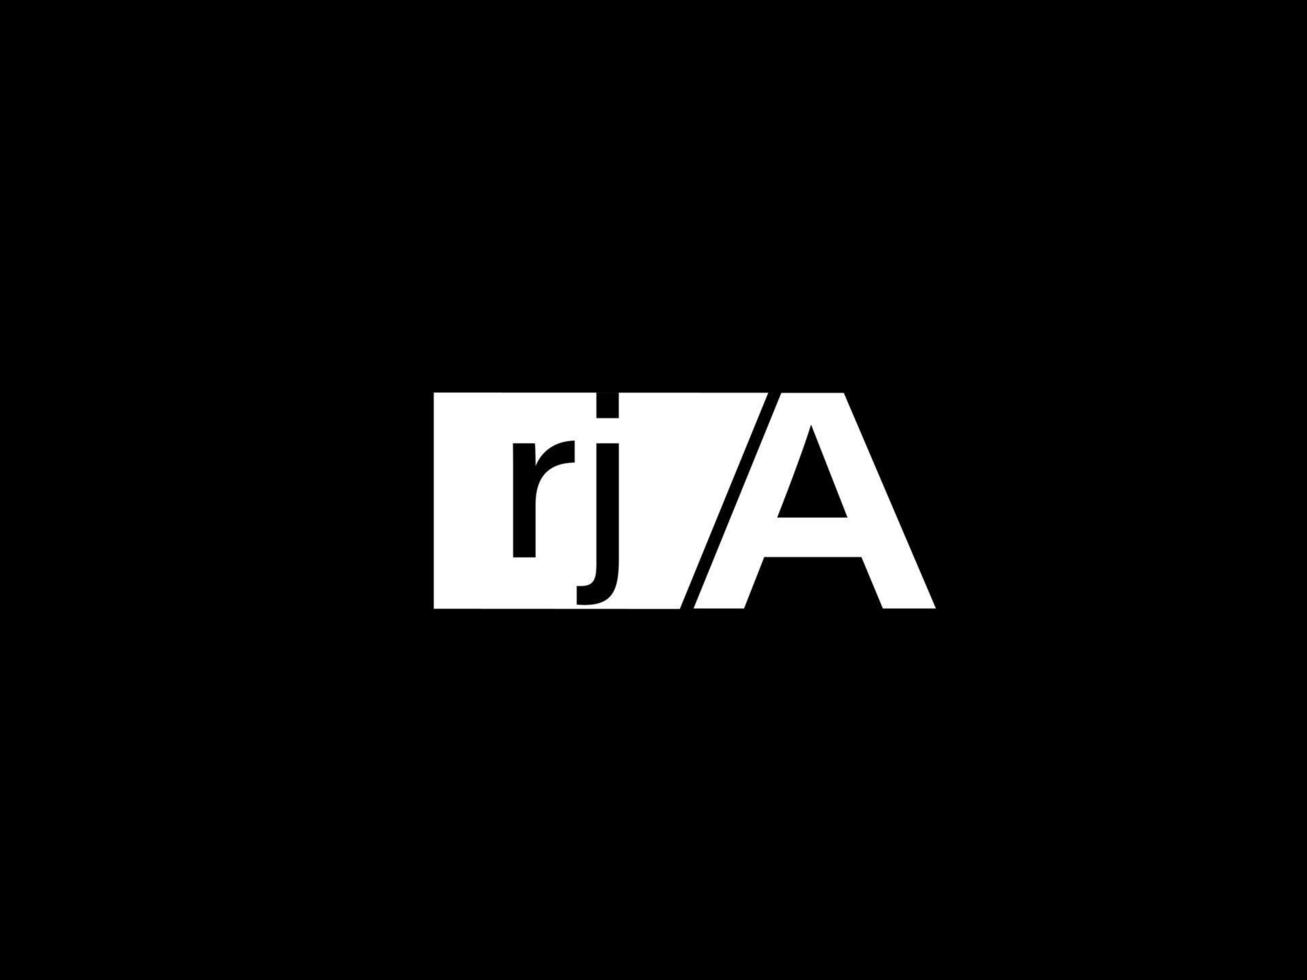 logo rja et art vectoriel de conception graphique, icônes isolées sur fond noir